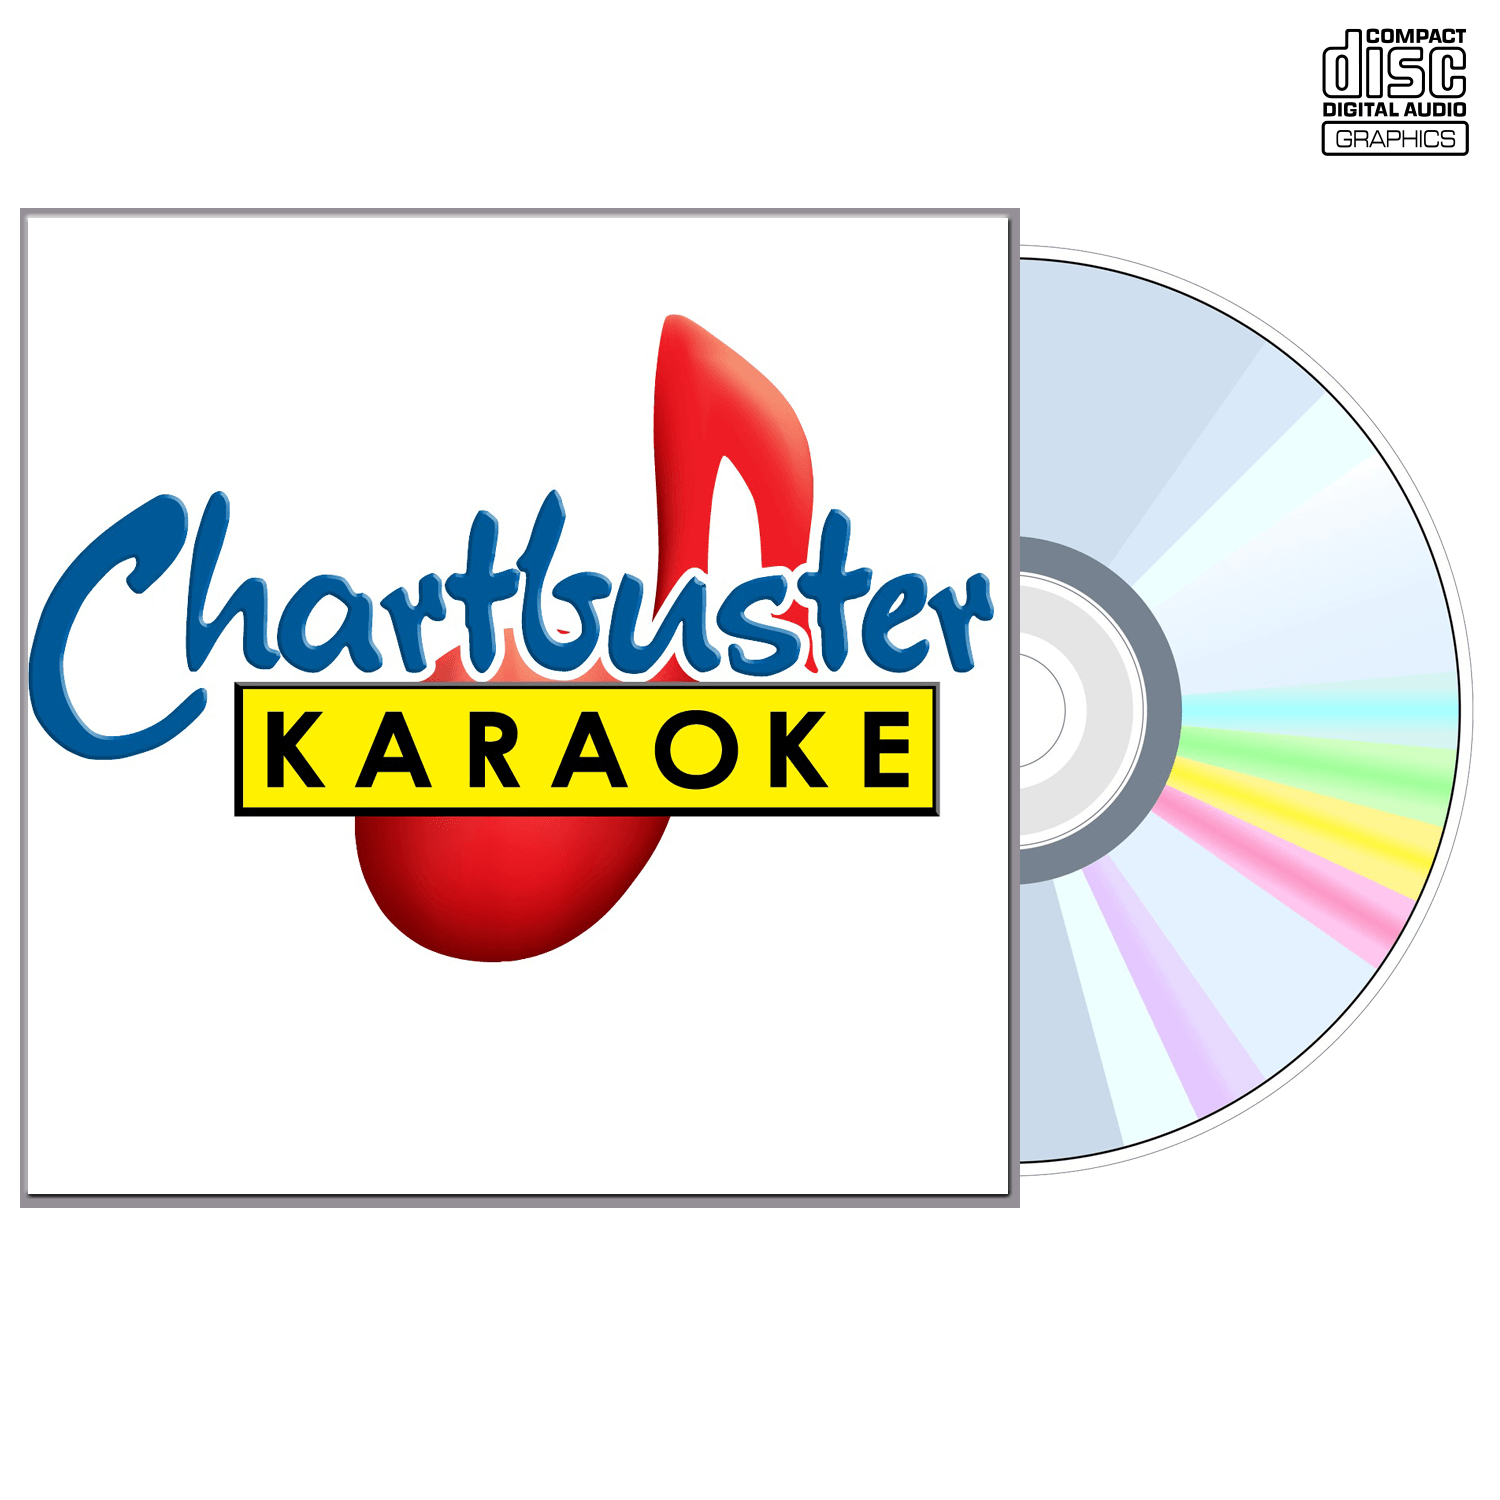 Sister Hazel - CD+G - Chartbuster Karaoke - Karaoke Home Entertainment